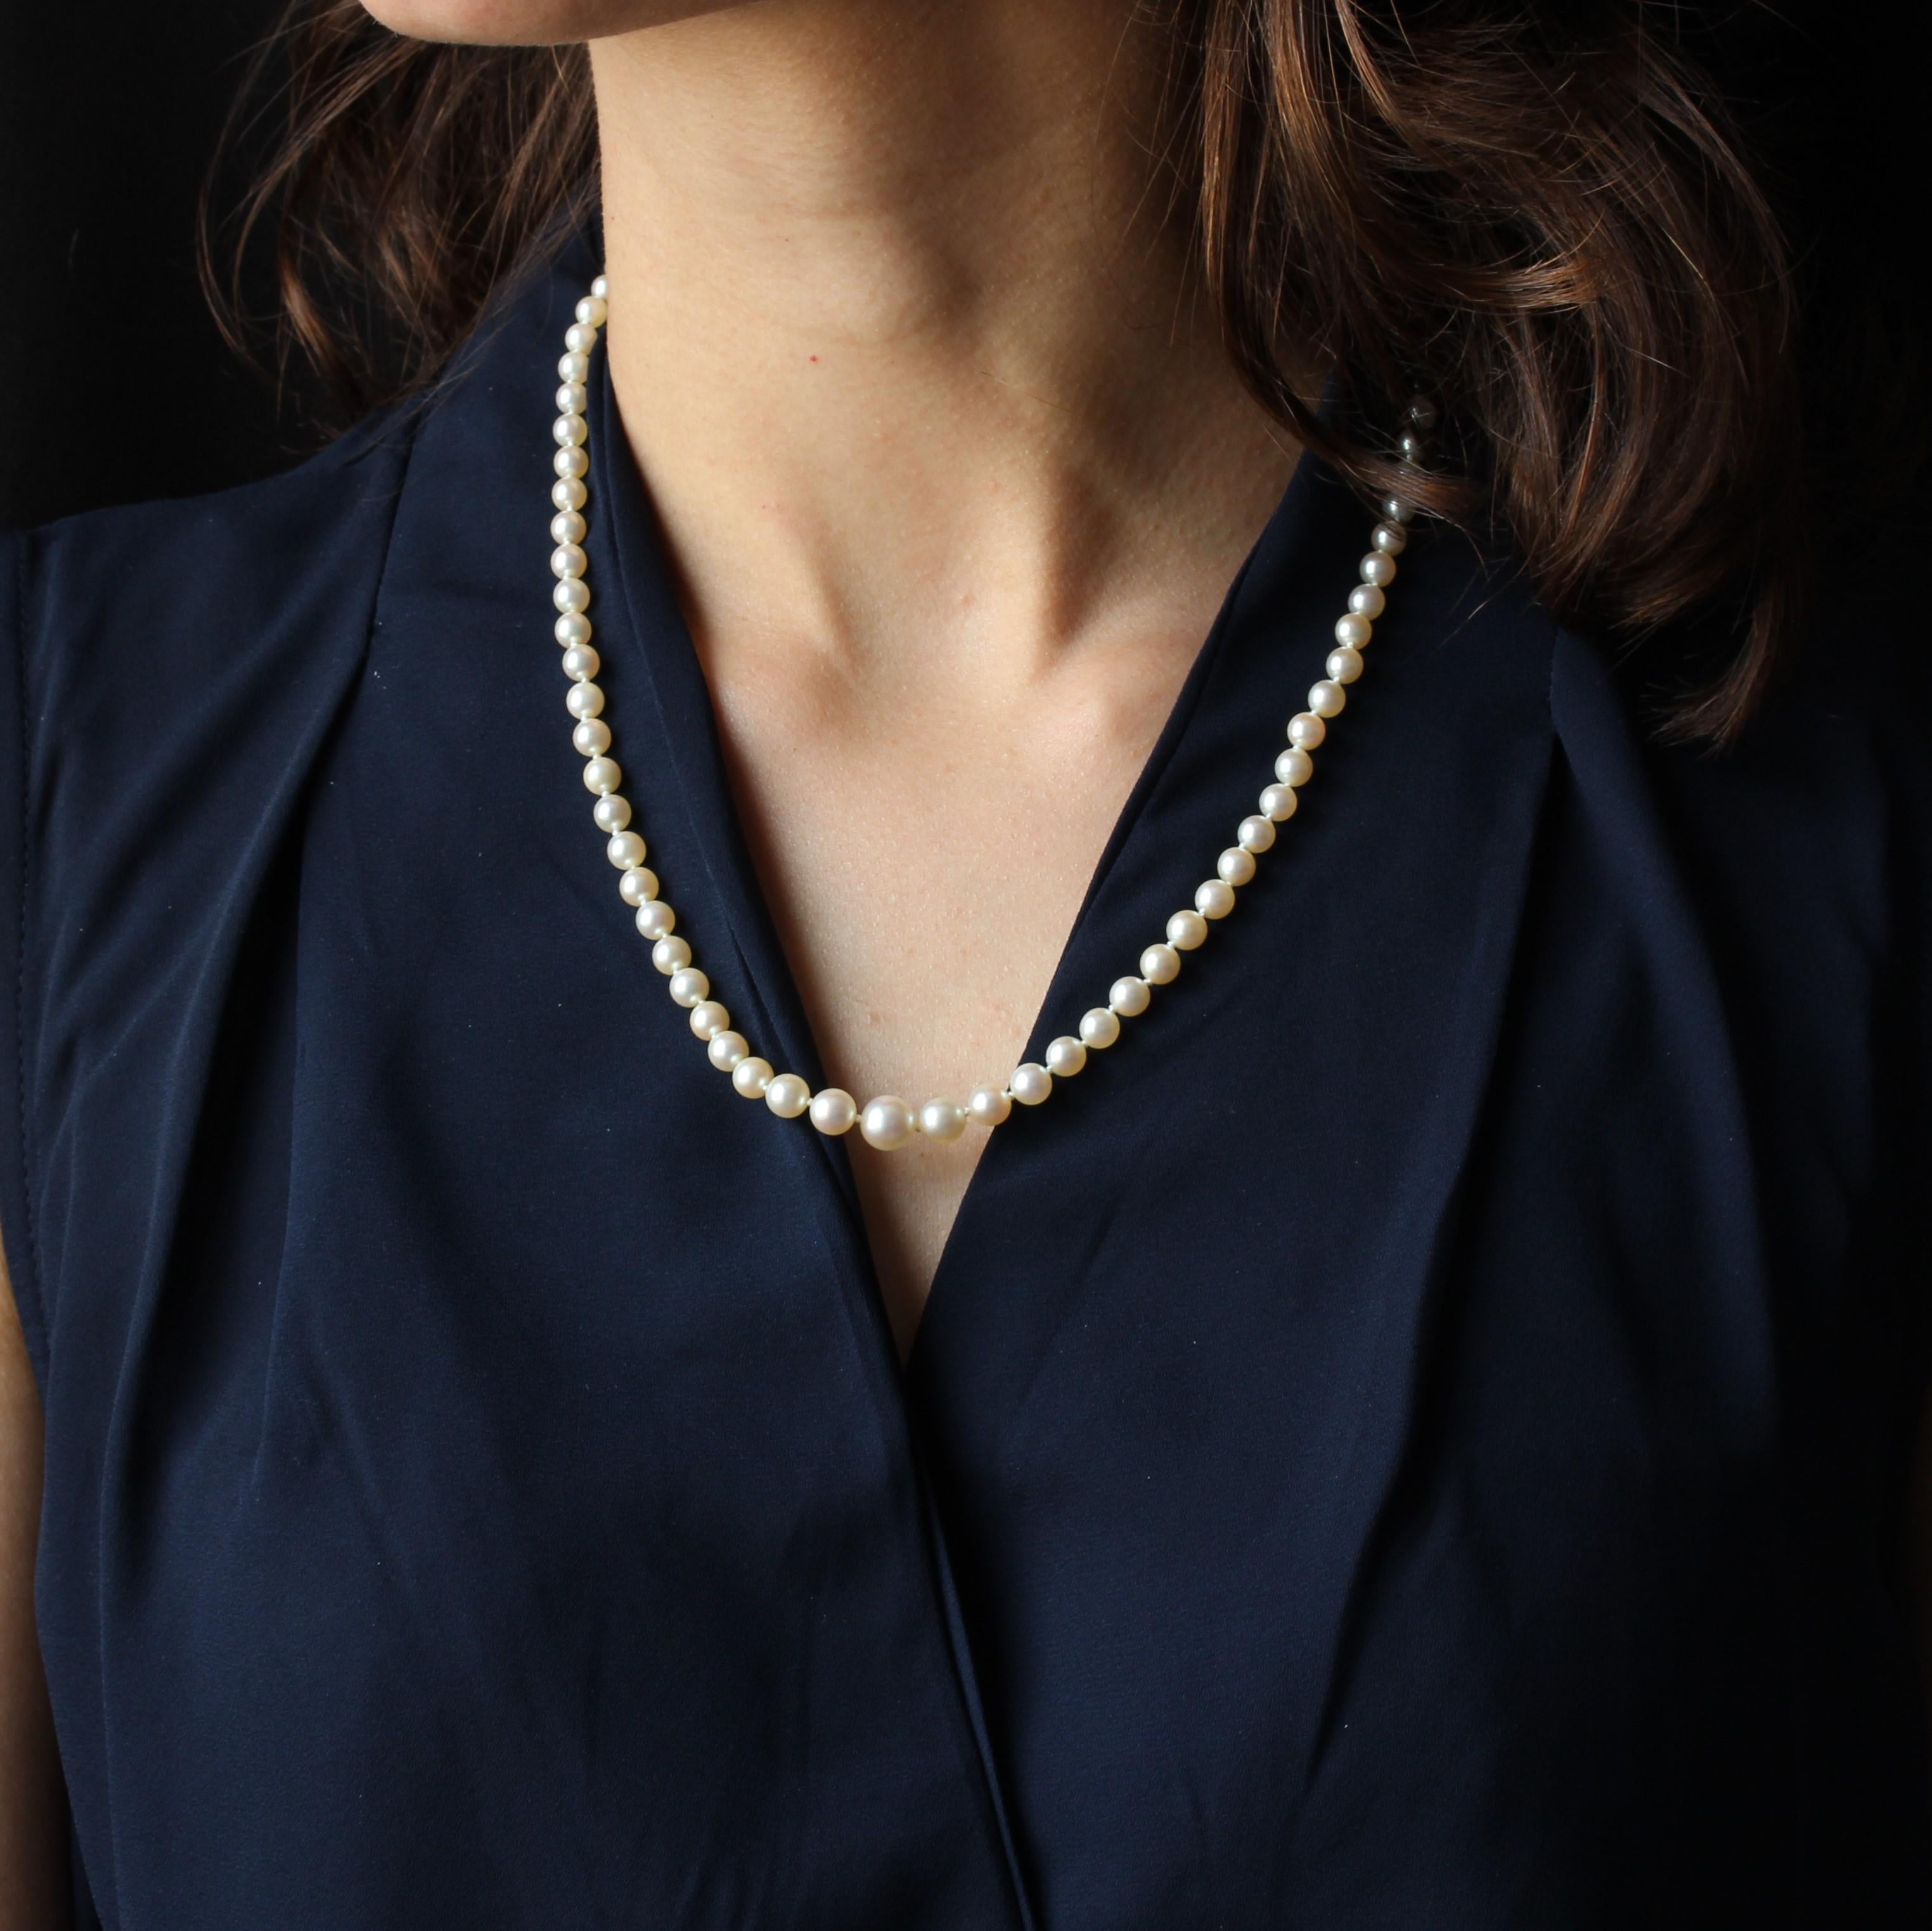 Ce collier de perles est composé d'un rang de perles de culture japonaises qui sont maintenues ensemble par un fermoir en or rose 18K. 
Diamètre des perles : 4/4,5 à 7/7,5 mm.
Longueur totale : 53 cm.
Poids total : environ 19,5 g.
Le collier a été